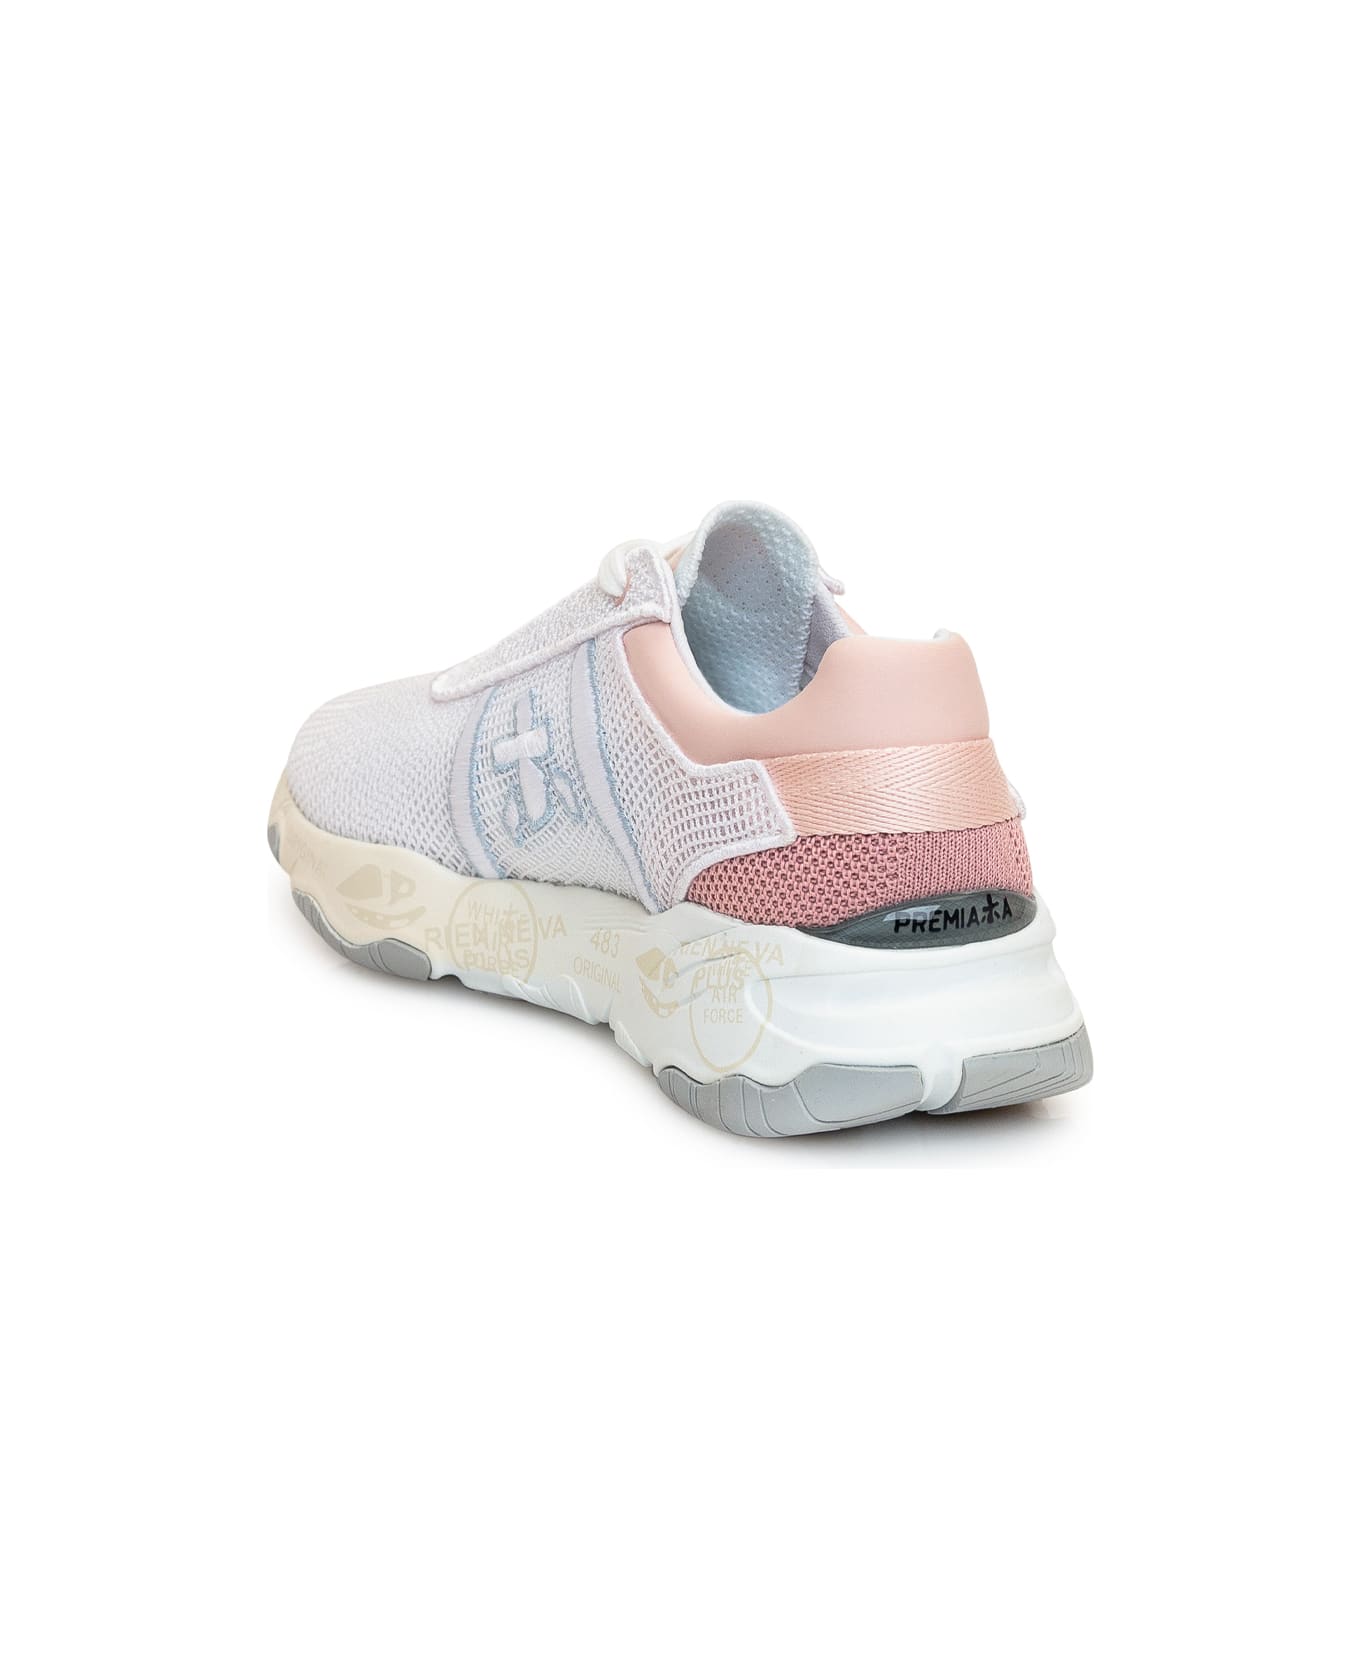 Premiata Buff 6207 - Sneakers - White/pink